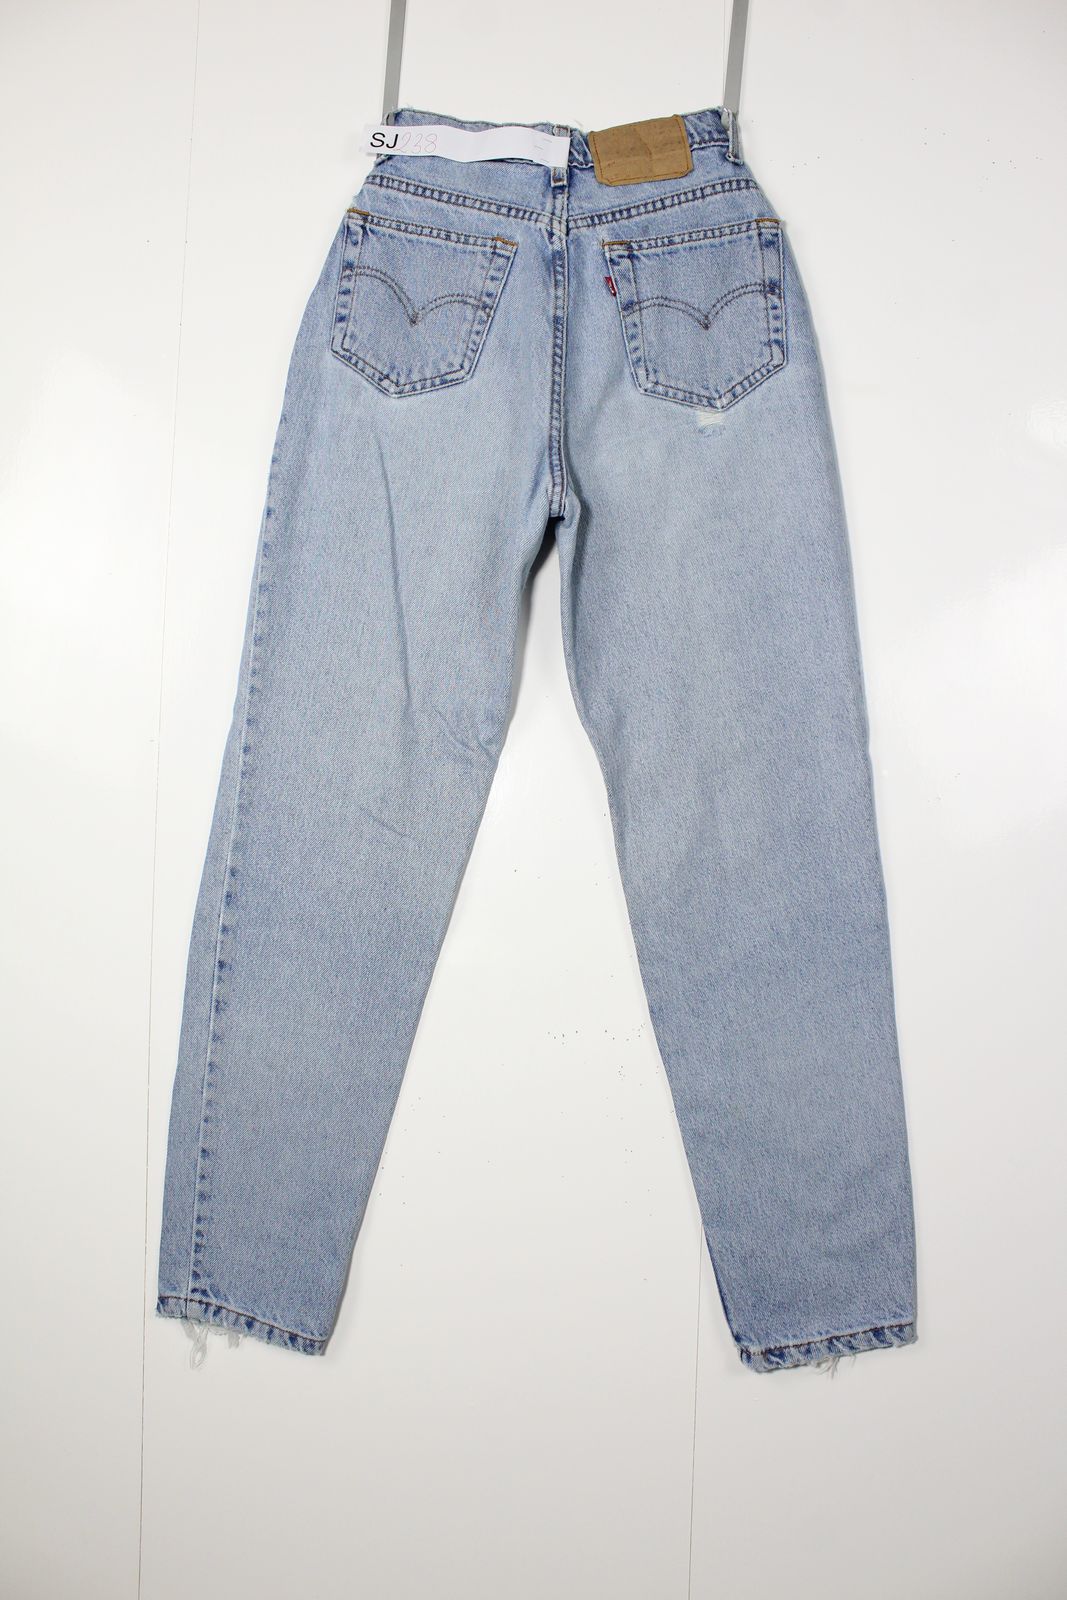 Levi's 512 Slim Fit Denim Tg. 7 Short Made In USA Jeans Vintage